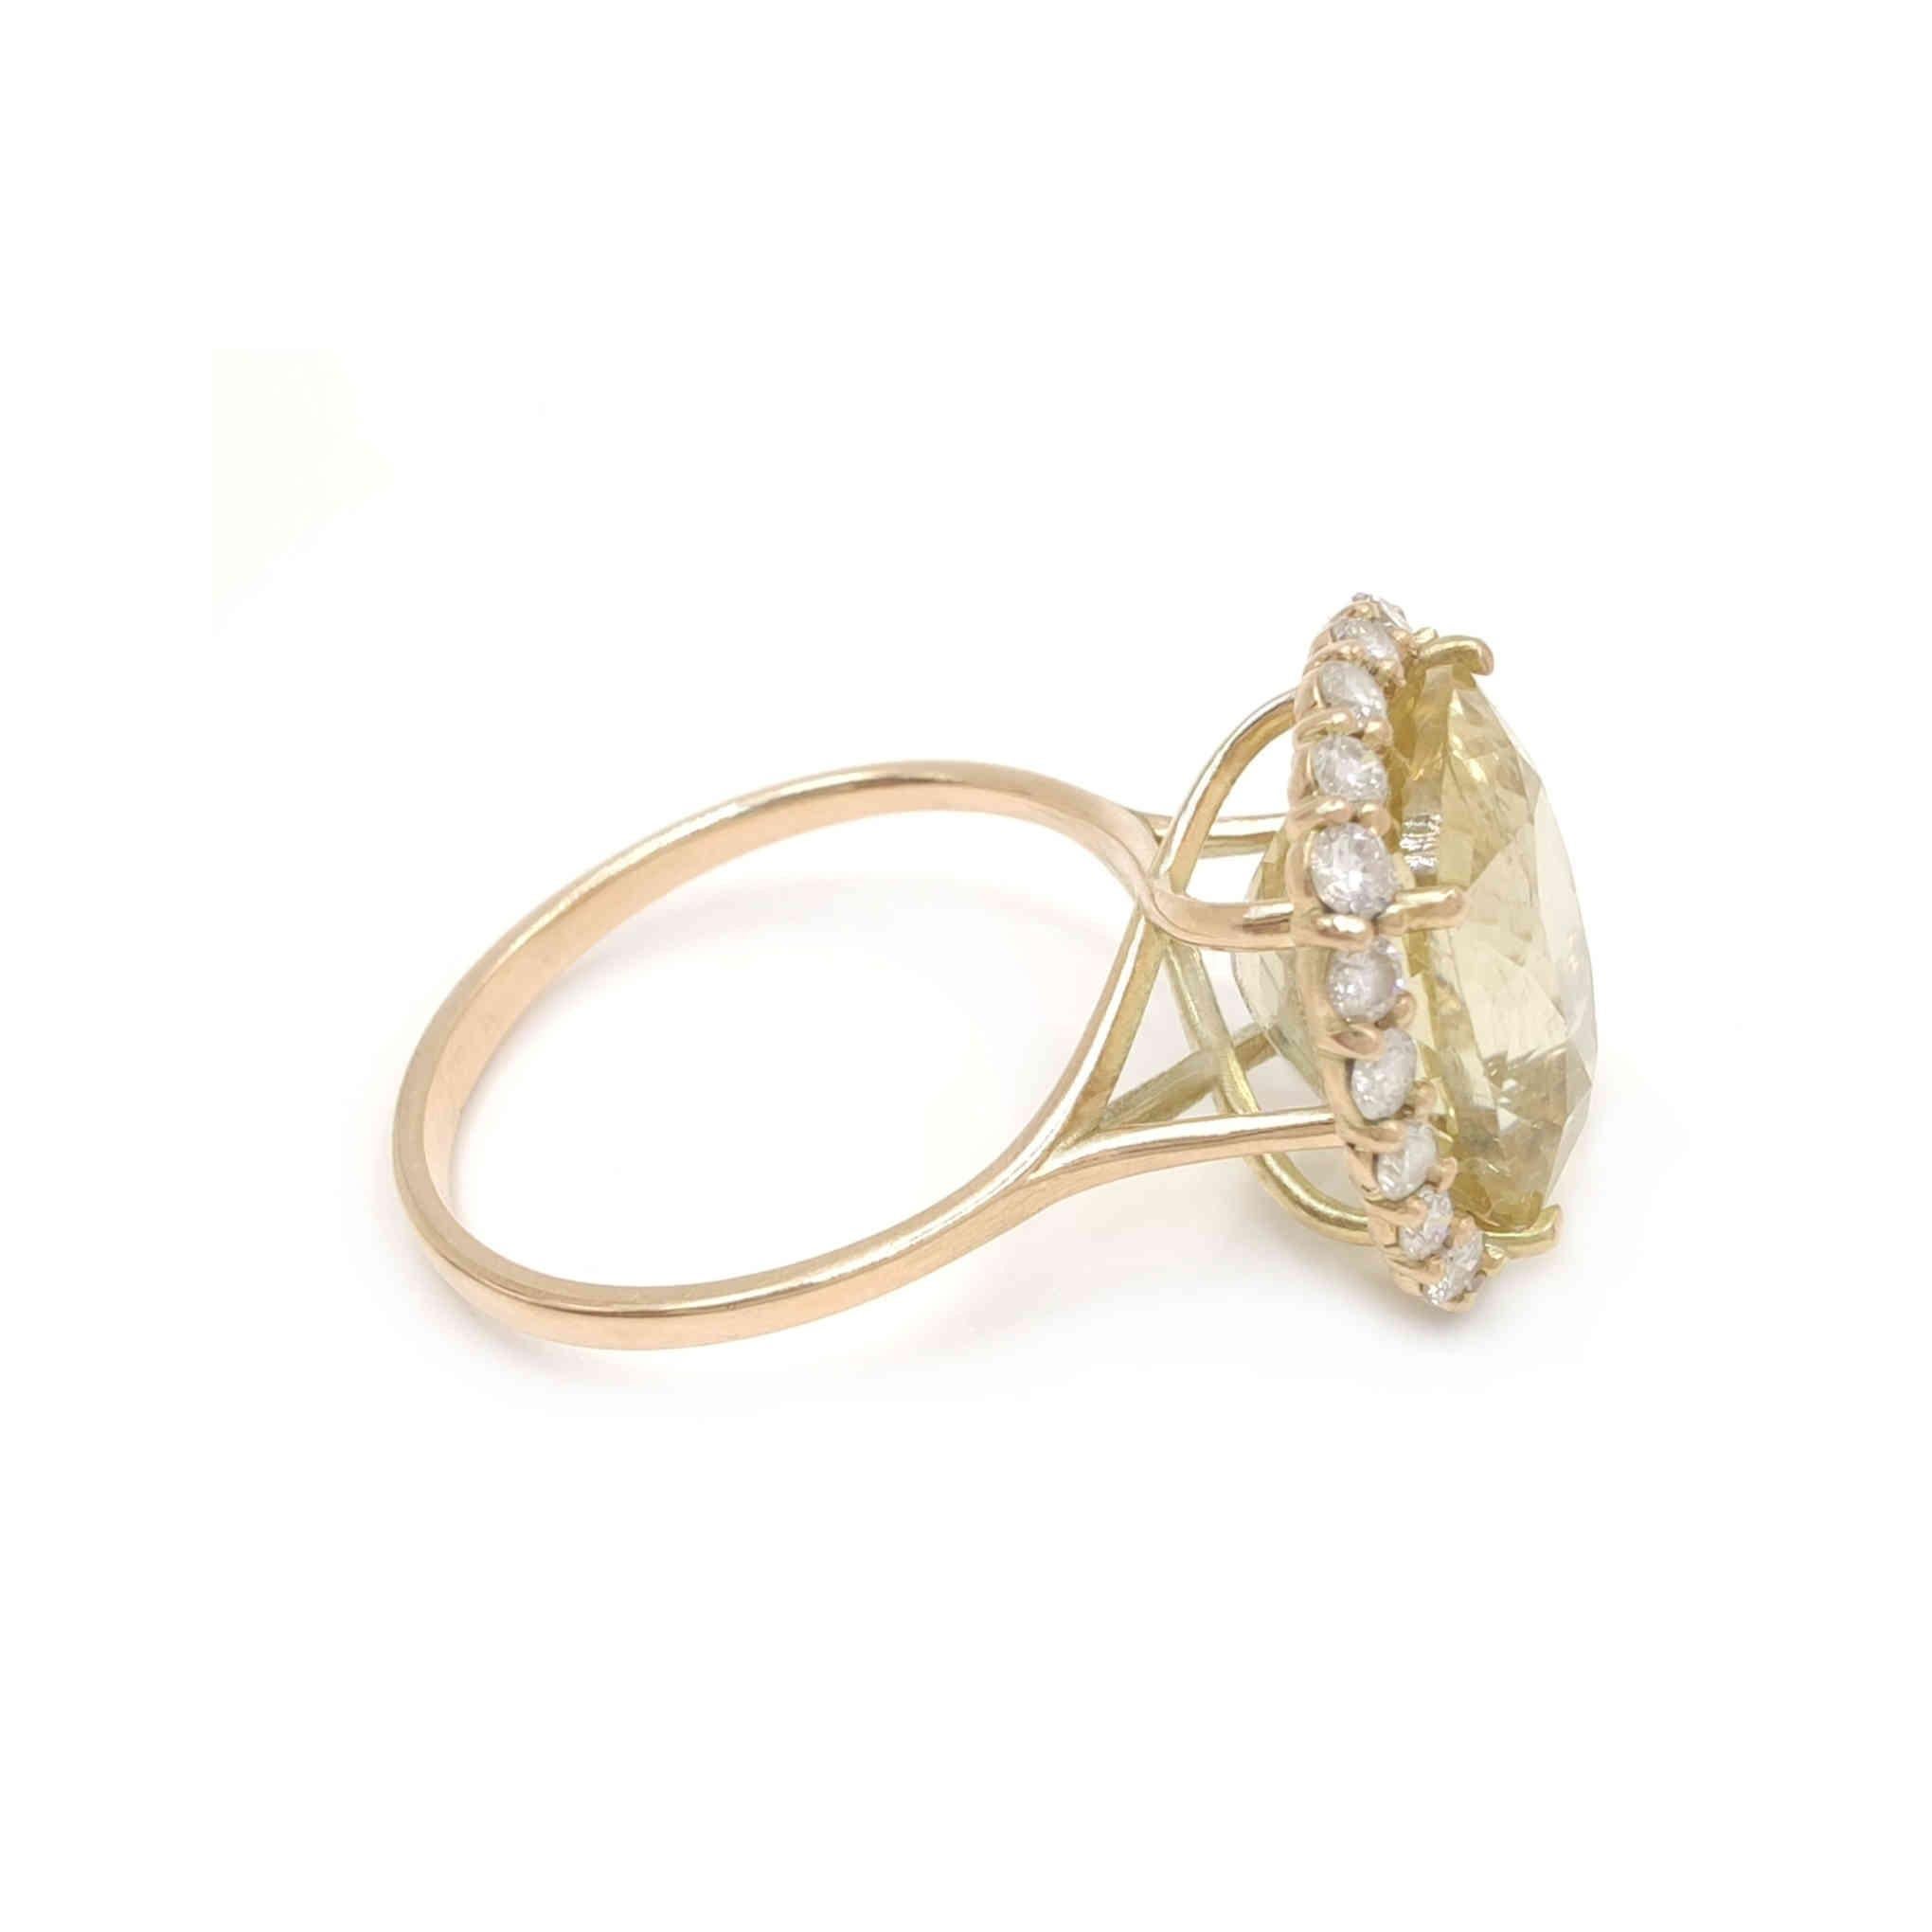 Gemstone 14k gold ring  Certified Tourmaline Diamond Gemstone Halo Cocktail ring 1